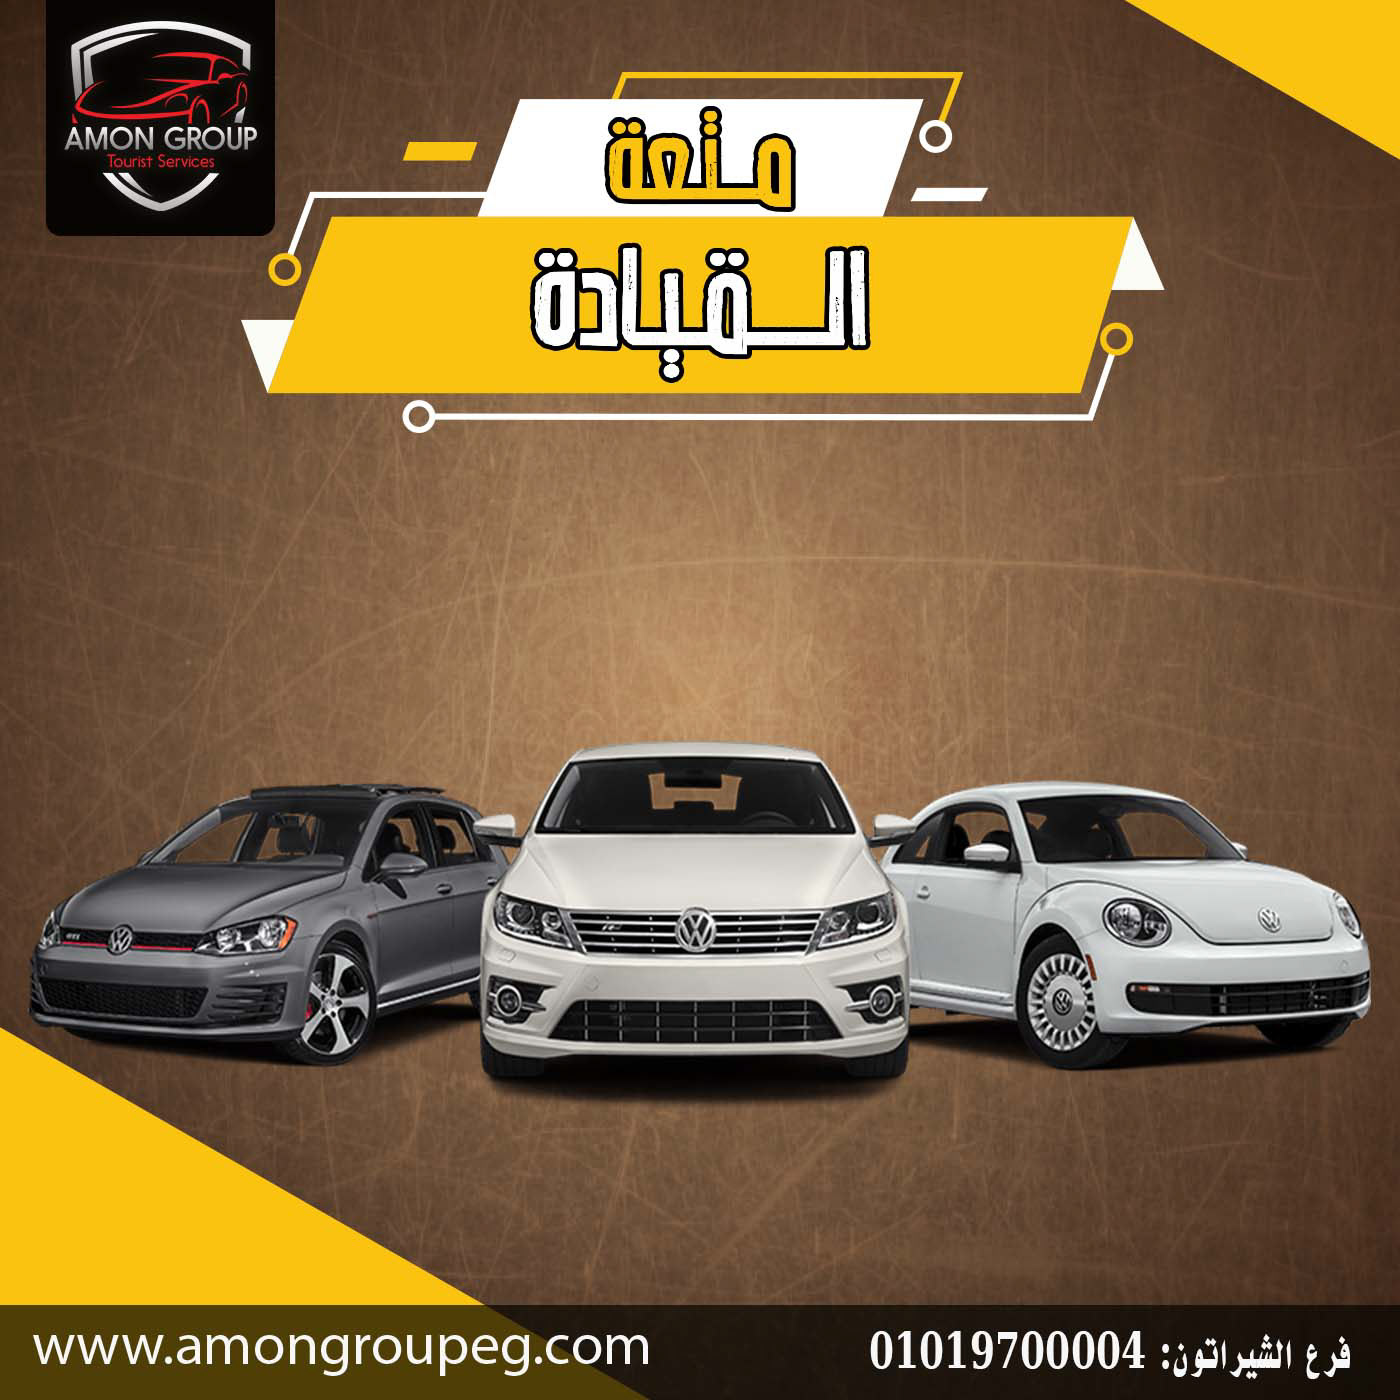 vector logo Cars automotive   car Socialmedia Advertising  Social media post Logo Design Tourist service